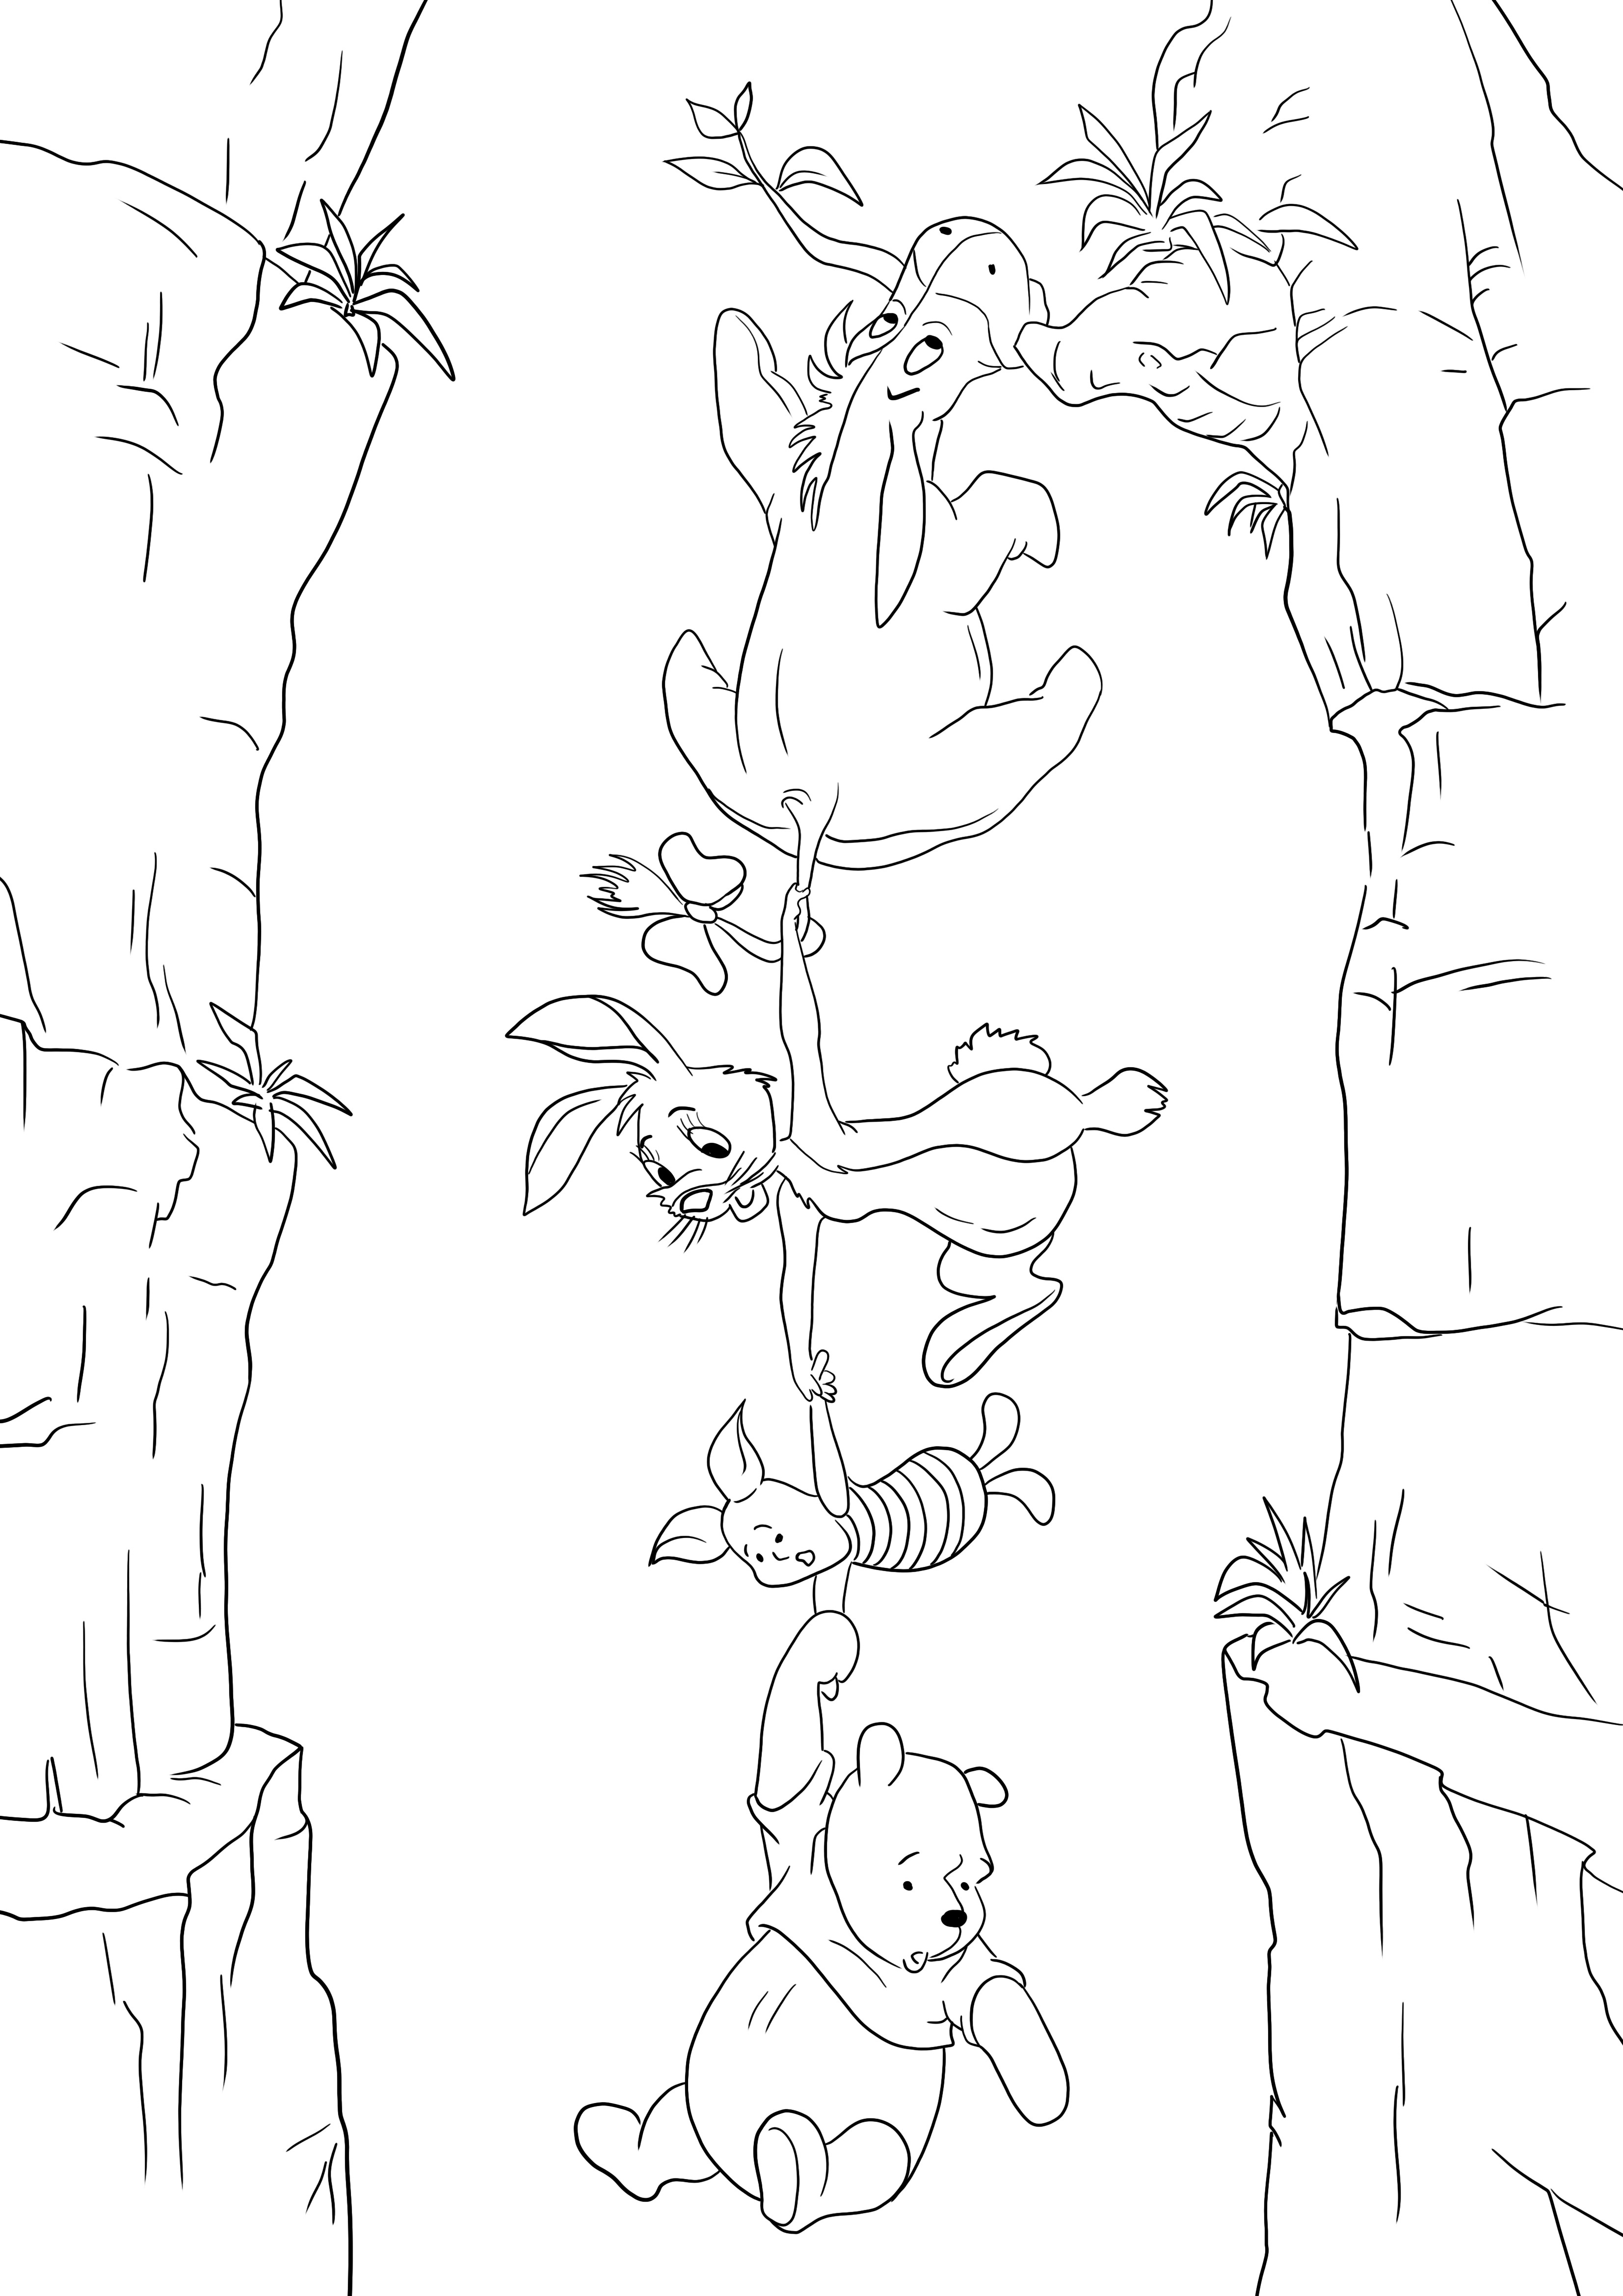 Gambar Winnie the Pooh, Piglet, Rabbit, dan Eeyore berpegangan tangan untuk dicetak secara gratis